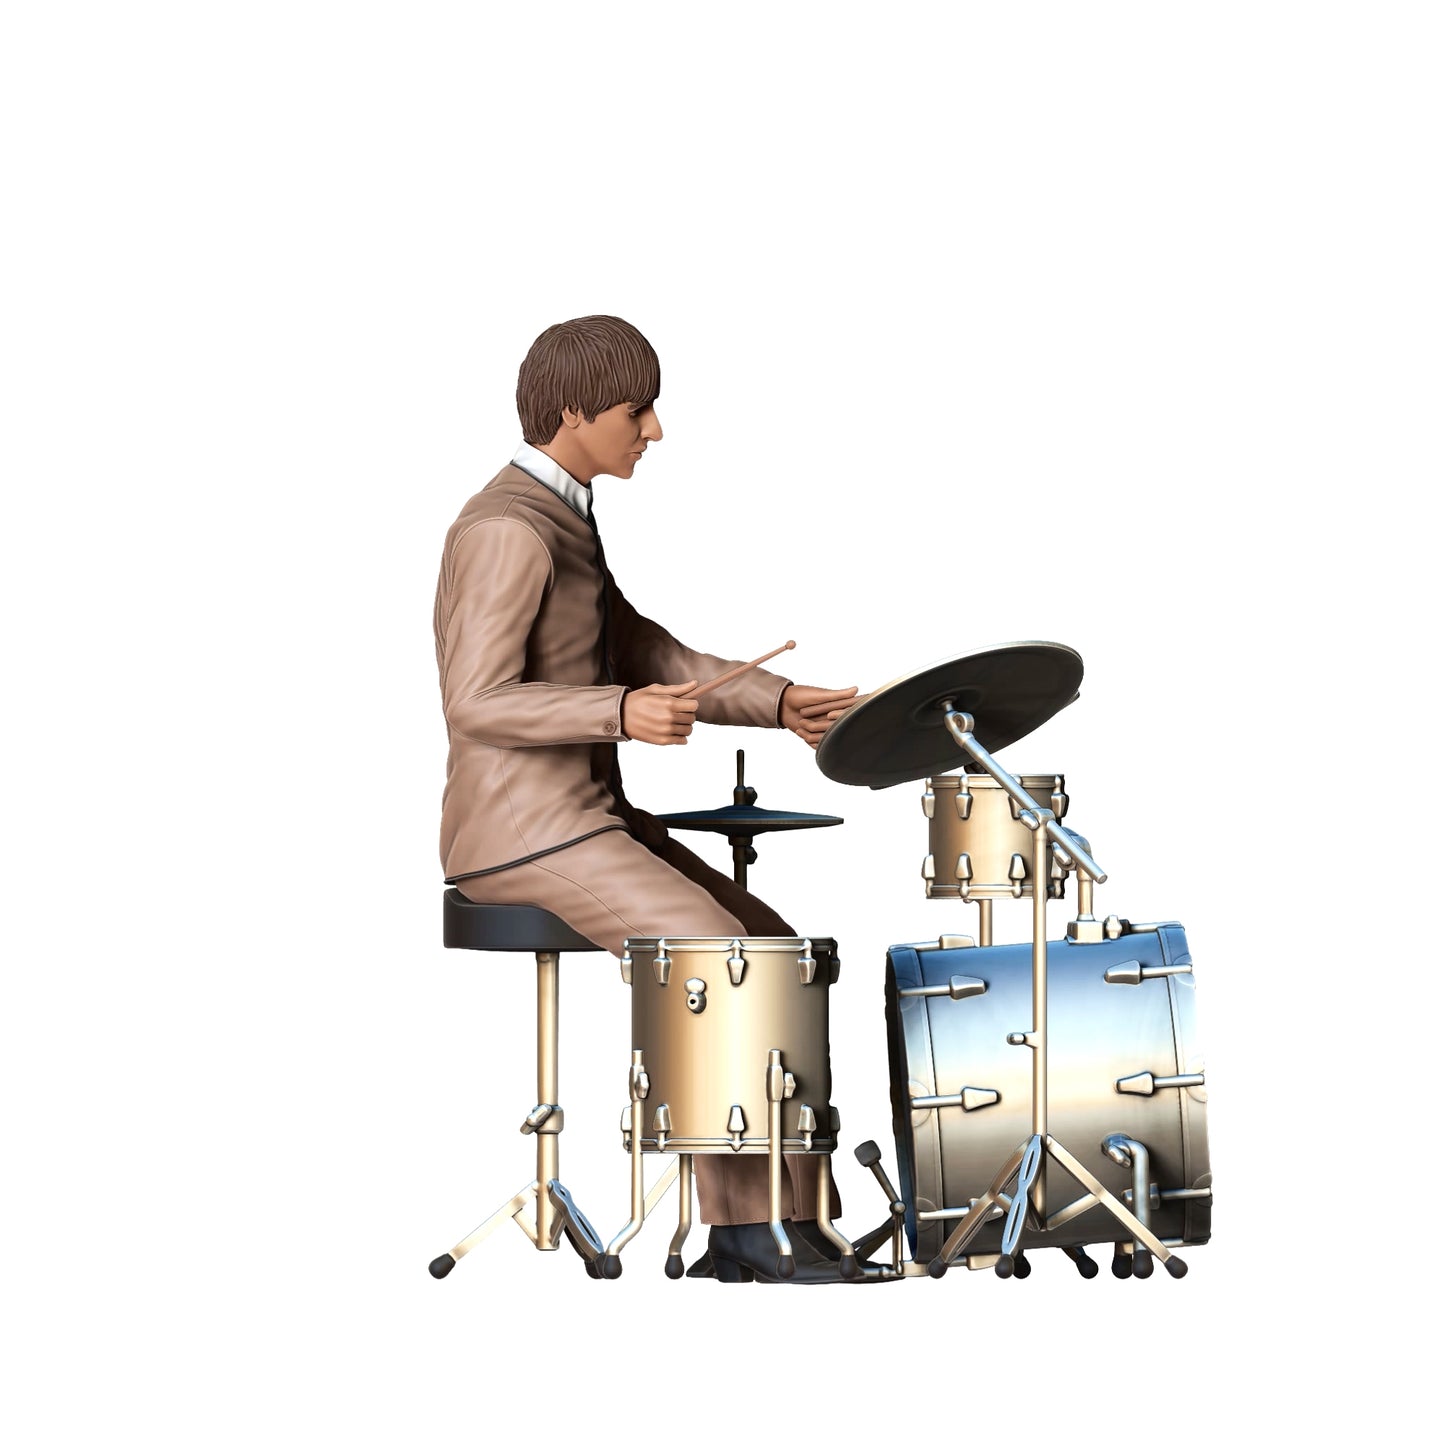 Produktfoto  0: Musiker - Mann am Schlagzeug